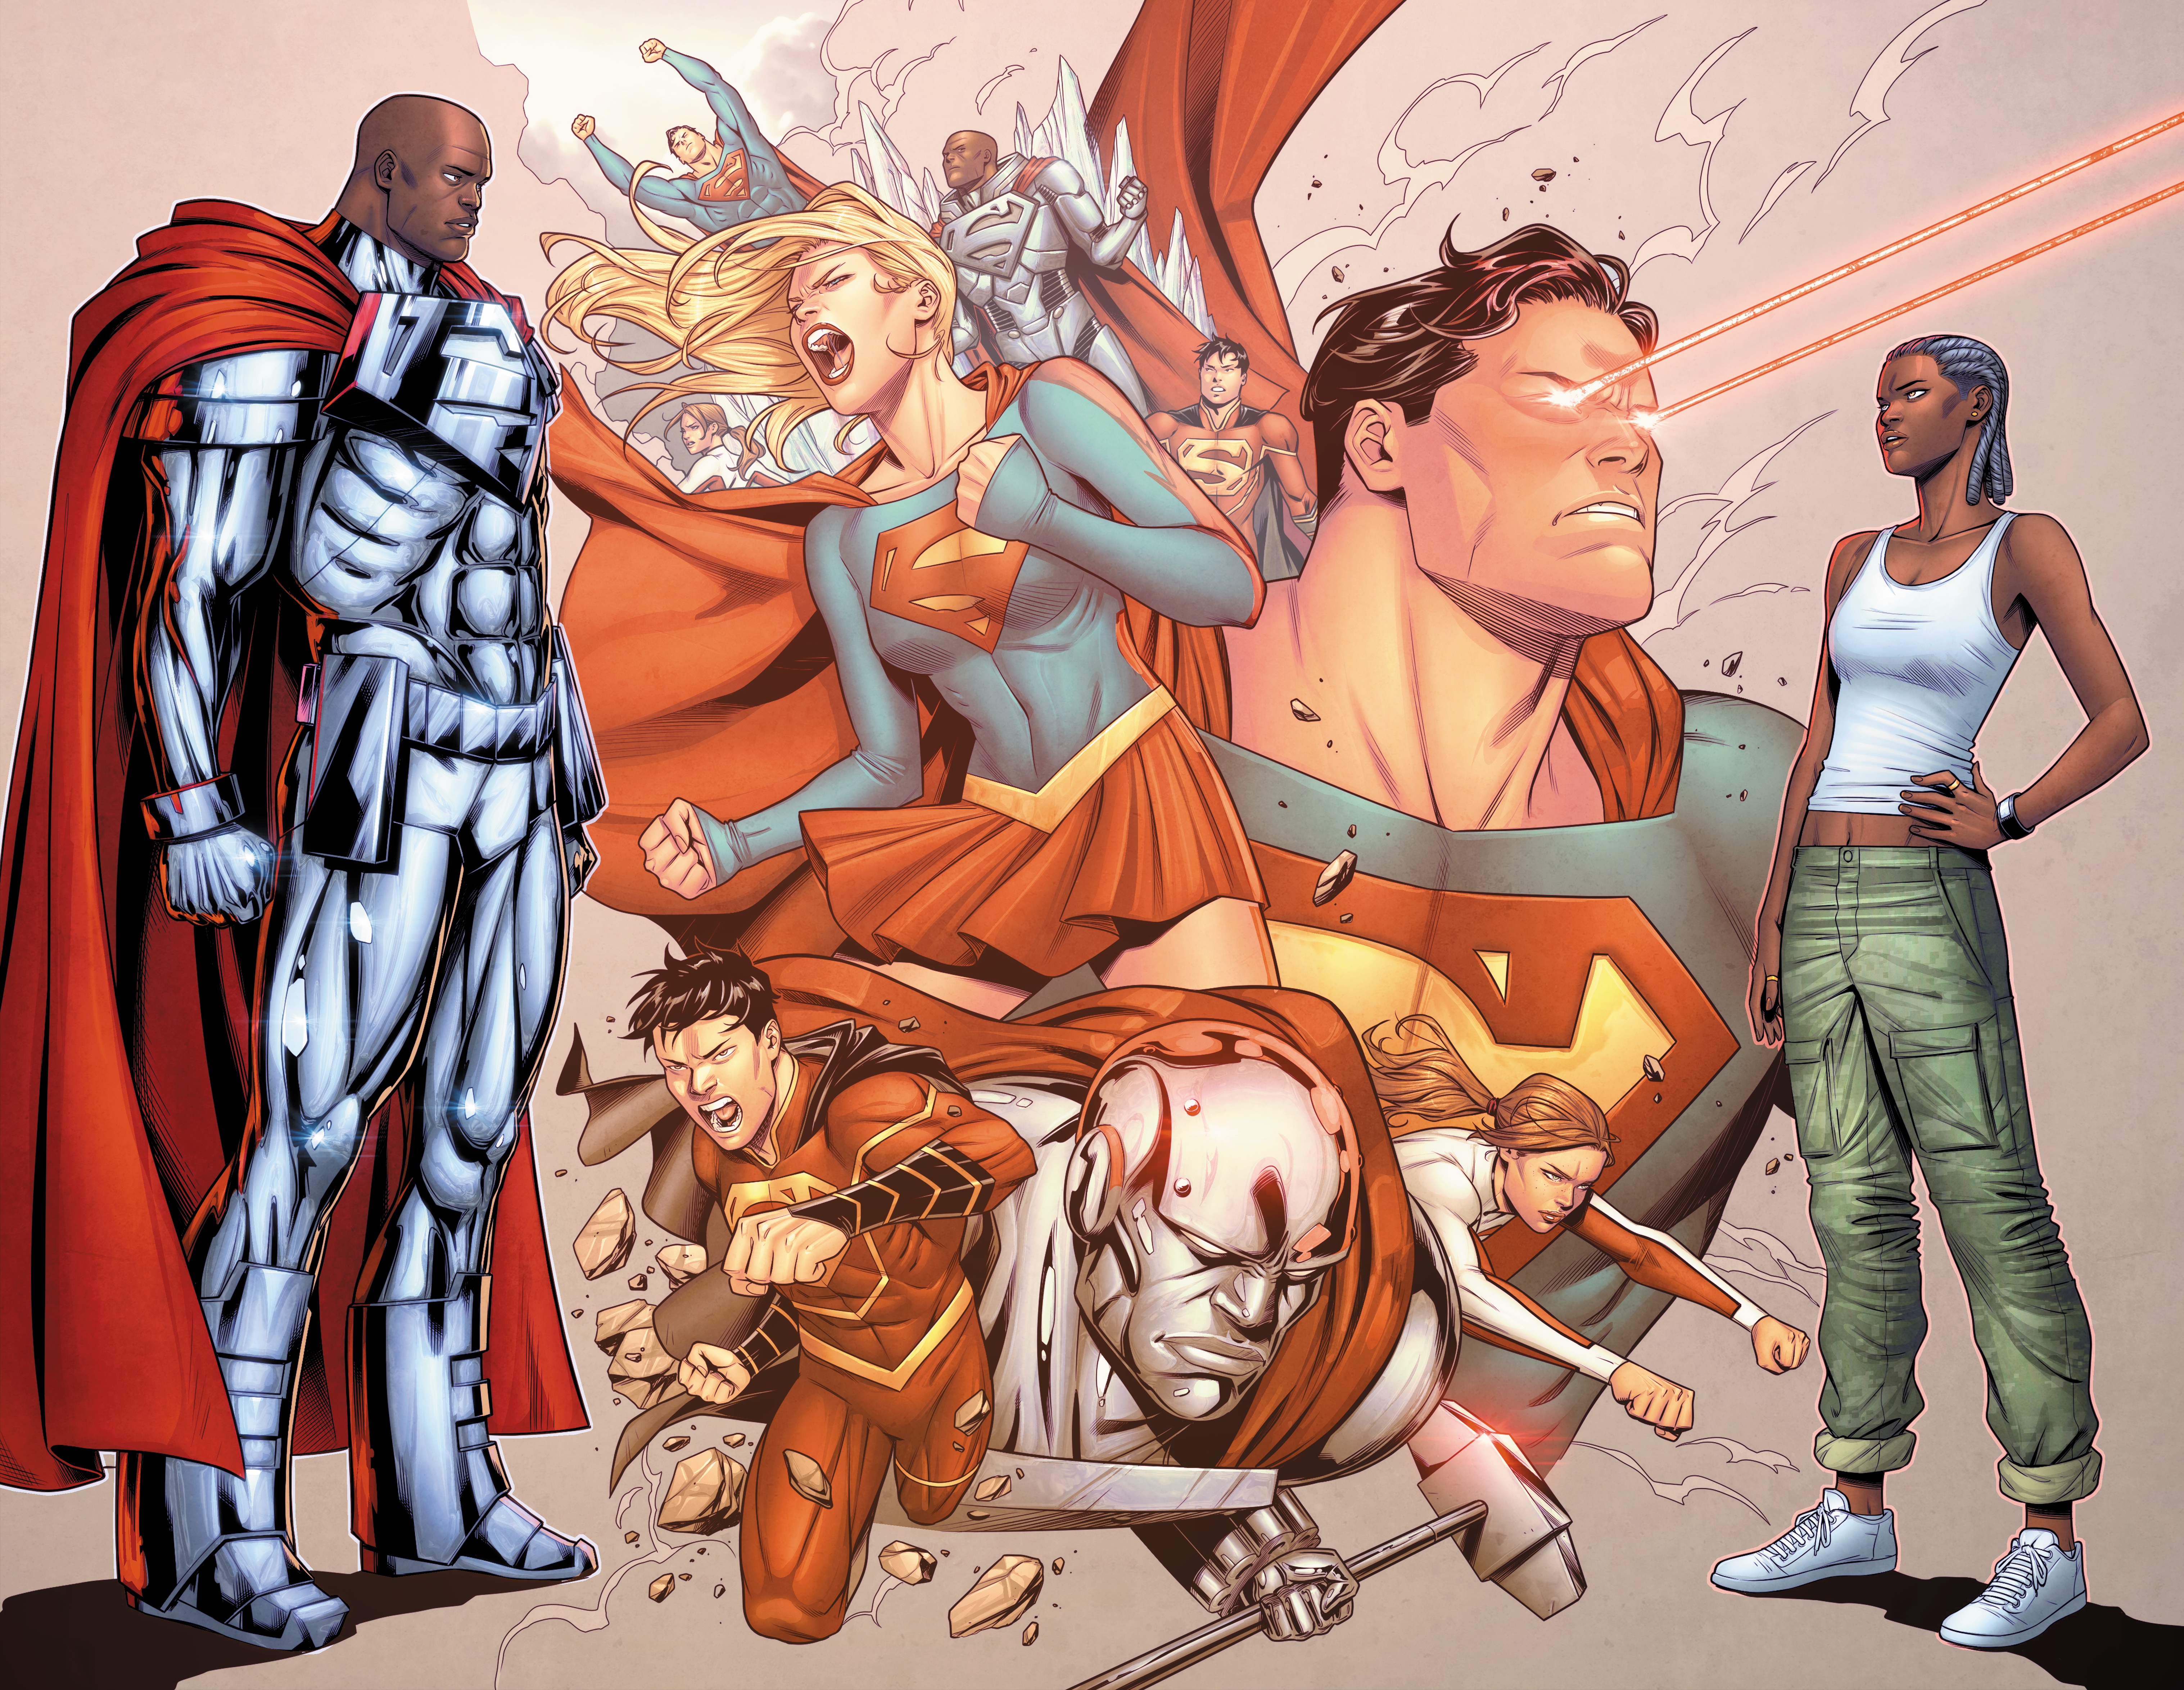 Steel et Natasha Irons, avec d'autres héros entre eux.